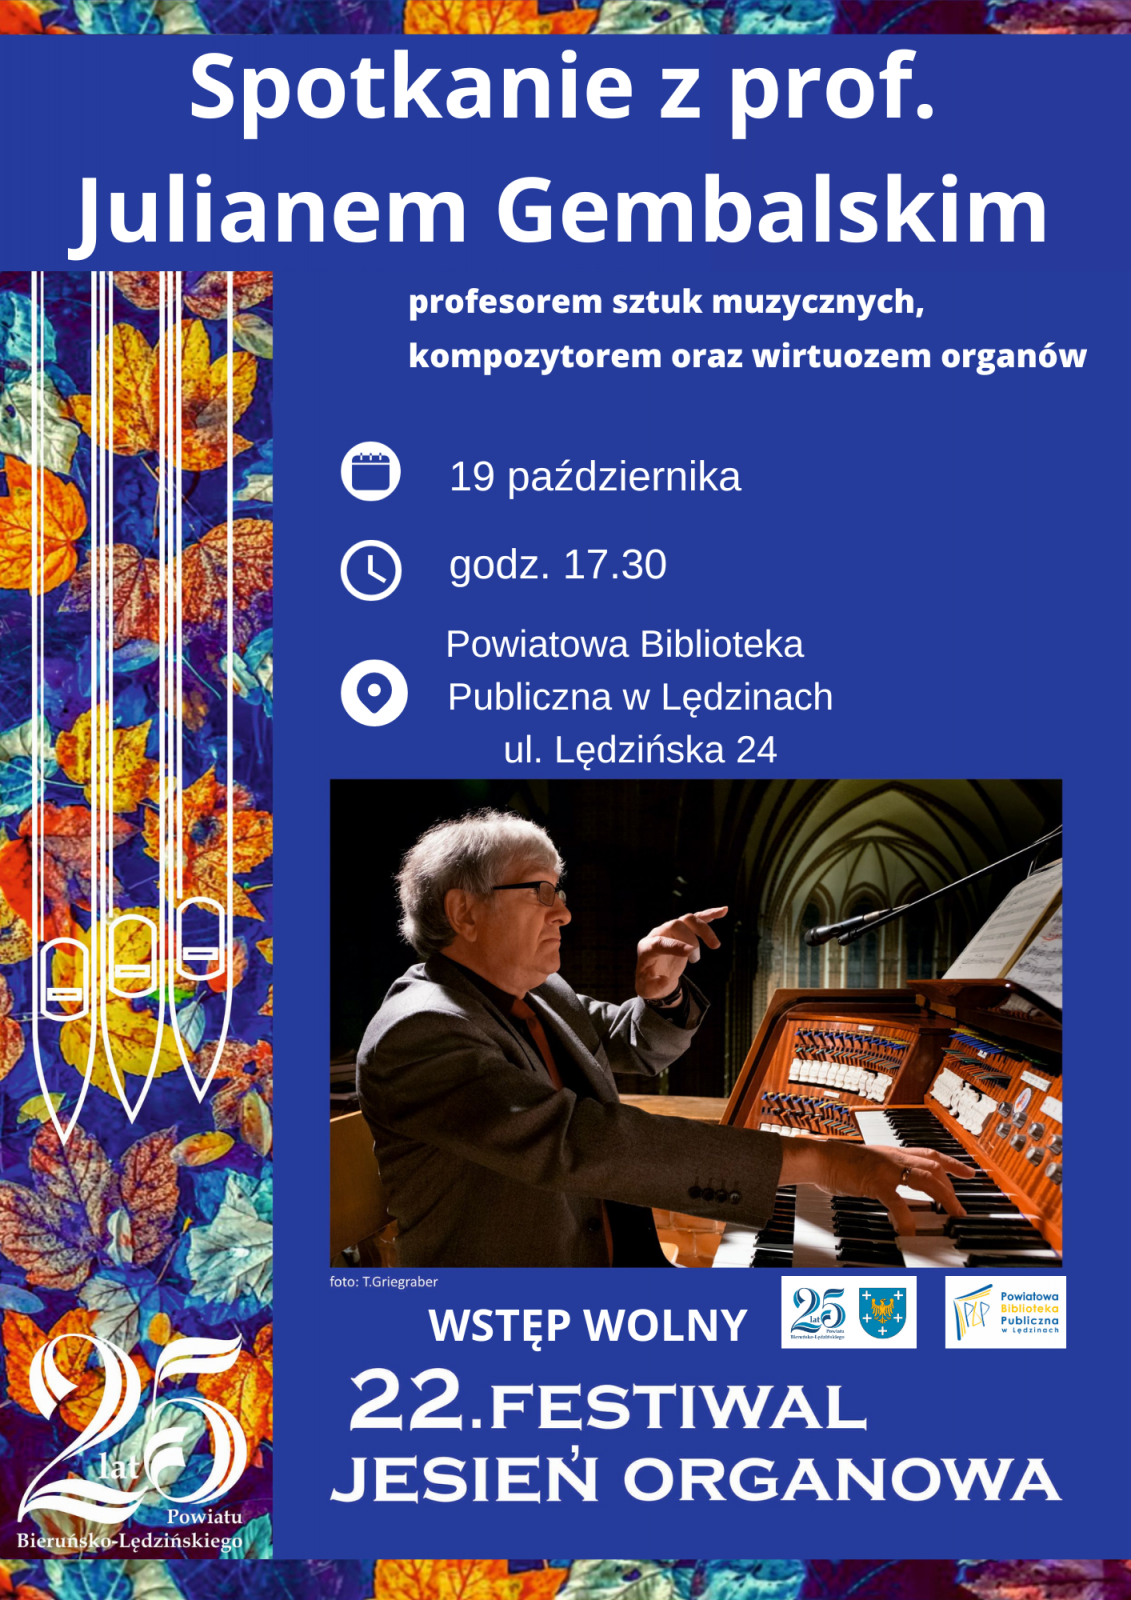 Plakat informacyjny przedstawiający prof. Juliana Gembalskiego grającego na organach